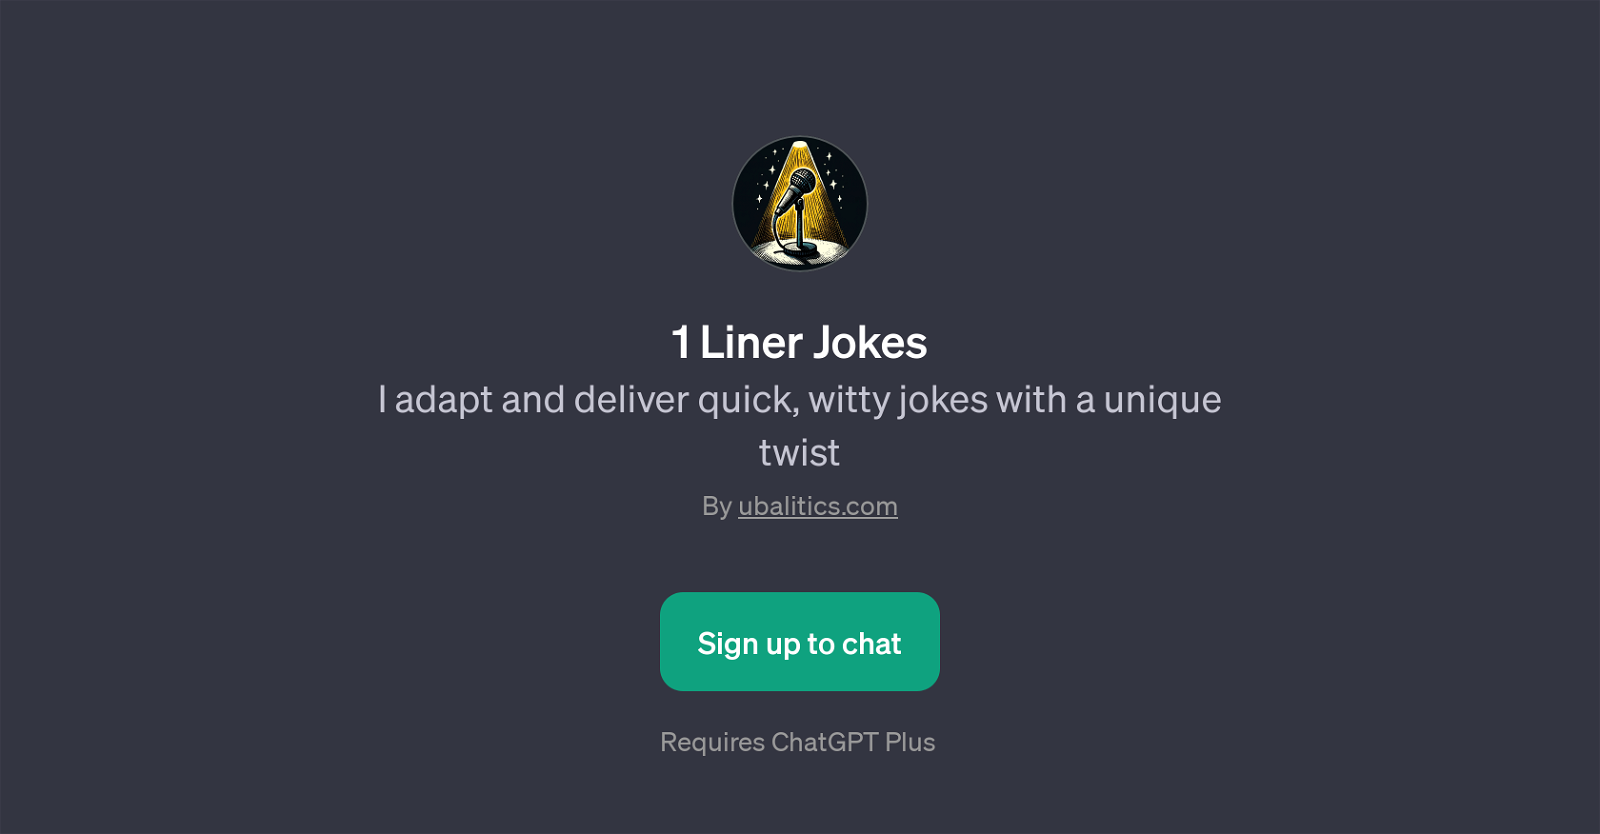 1 Liner Jokes website